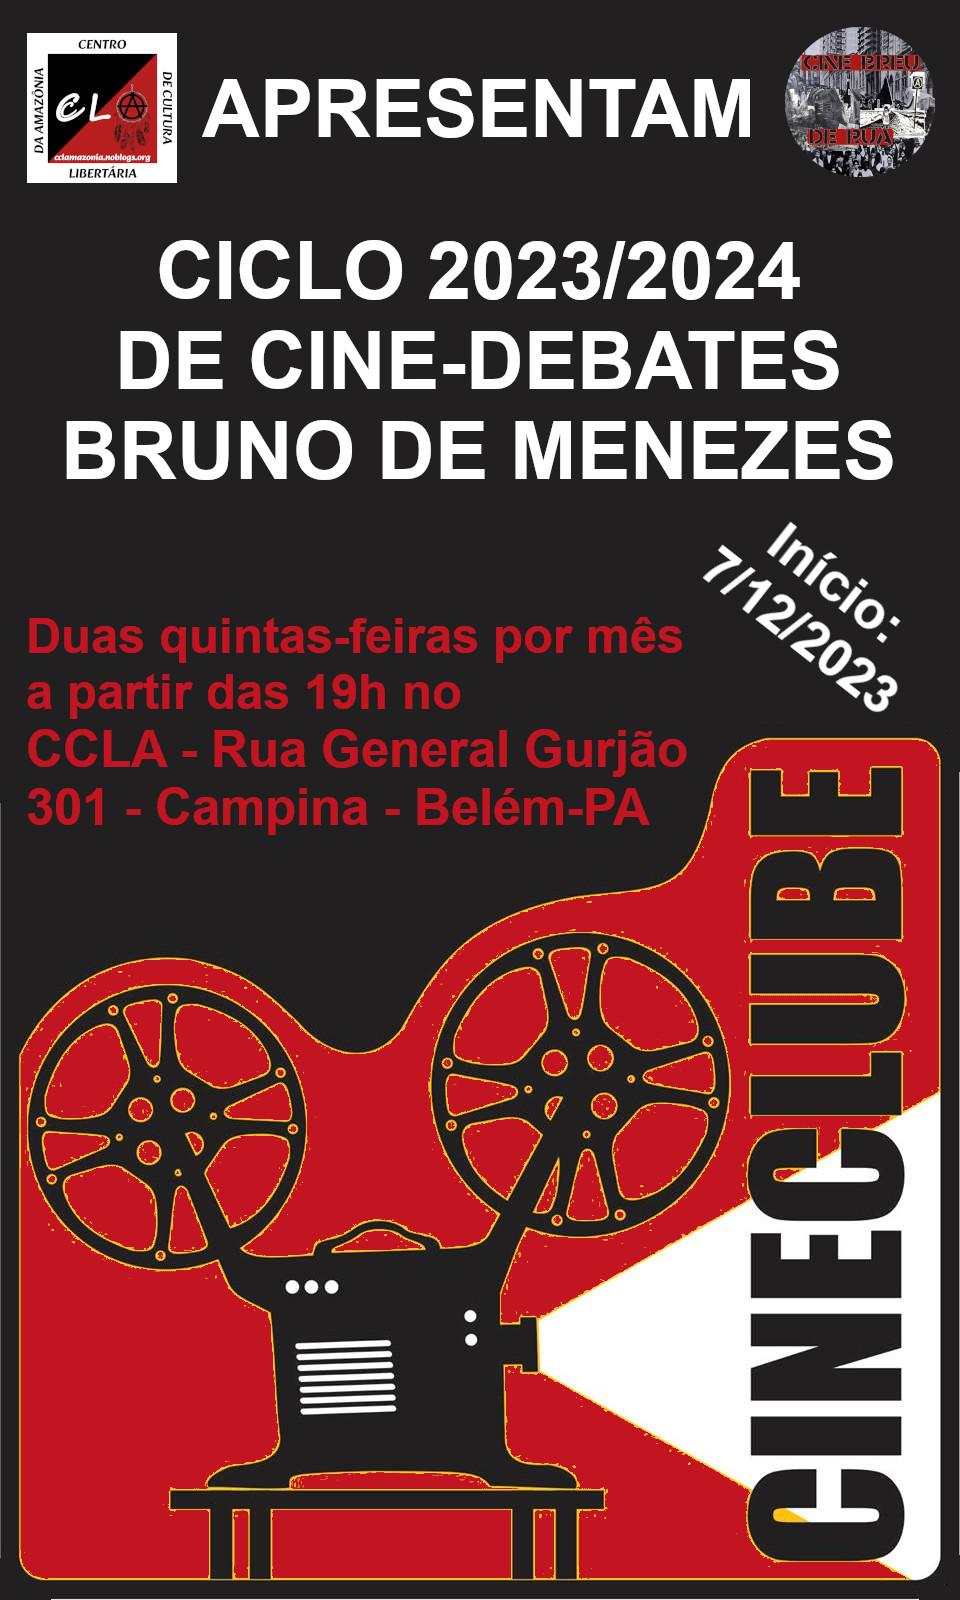 Vai começar o ciclo de cine-debates Bruno de Menezes no CCLA